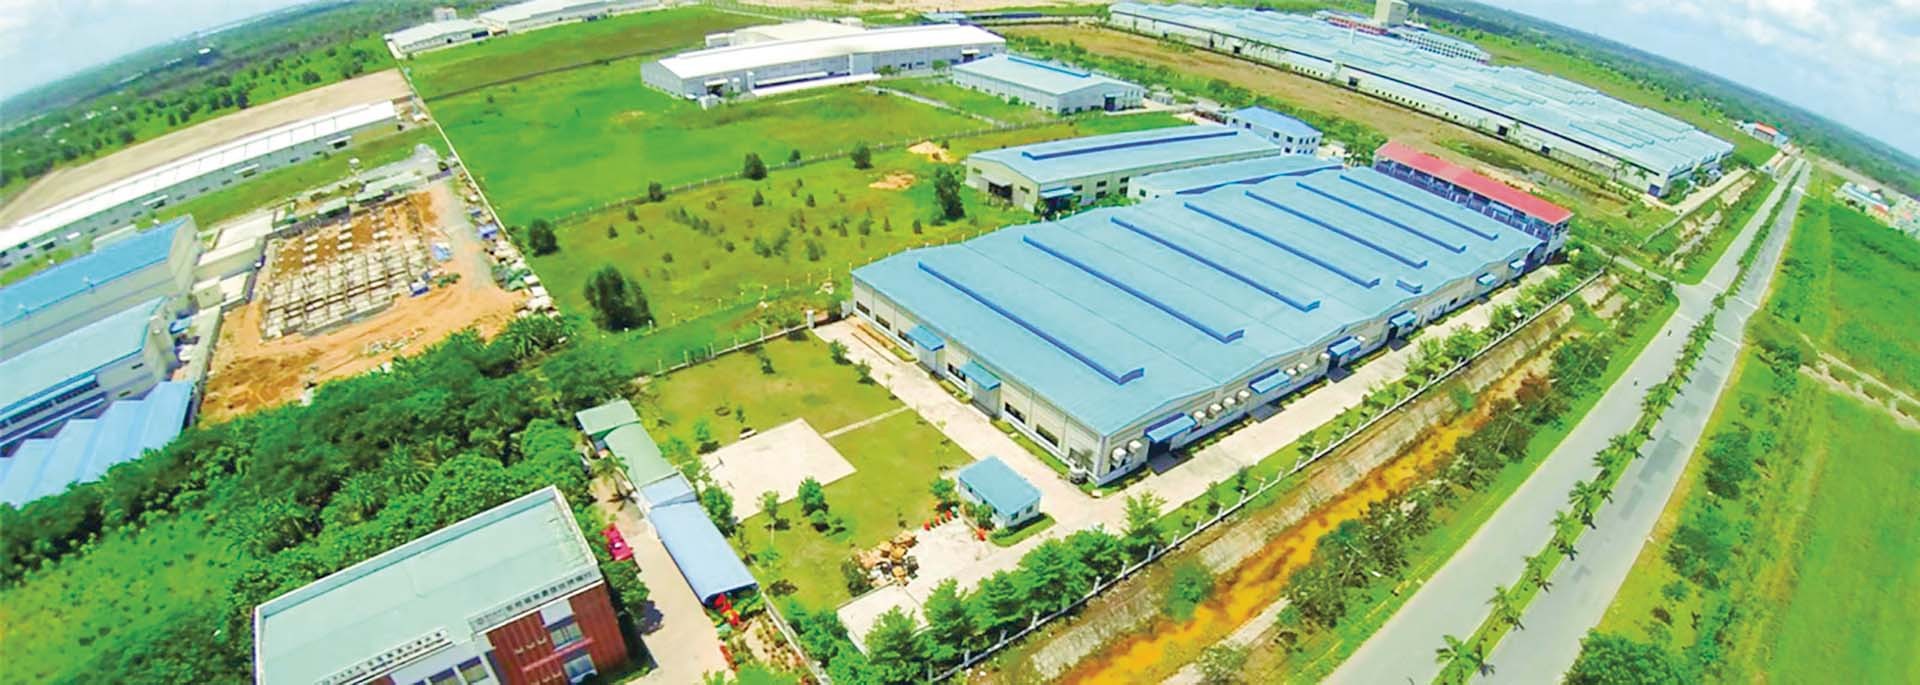 Khu công nghiệp Long Giang, Tiền Giang kỳ vọng ‘đón sóng’ đầu tư mới từ ASEAN